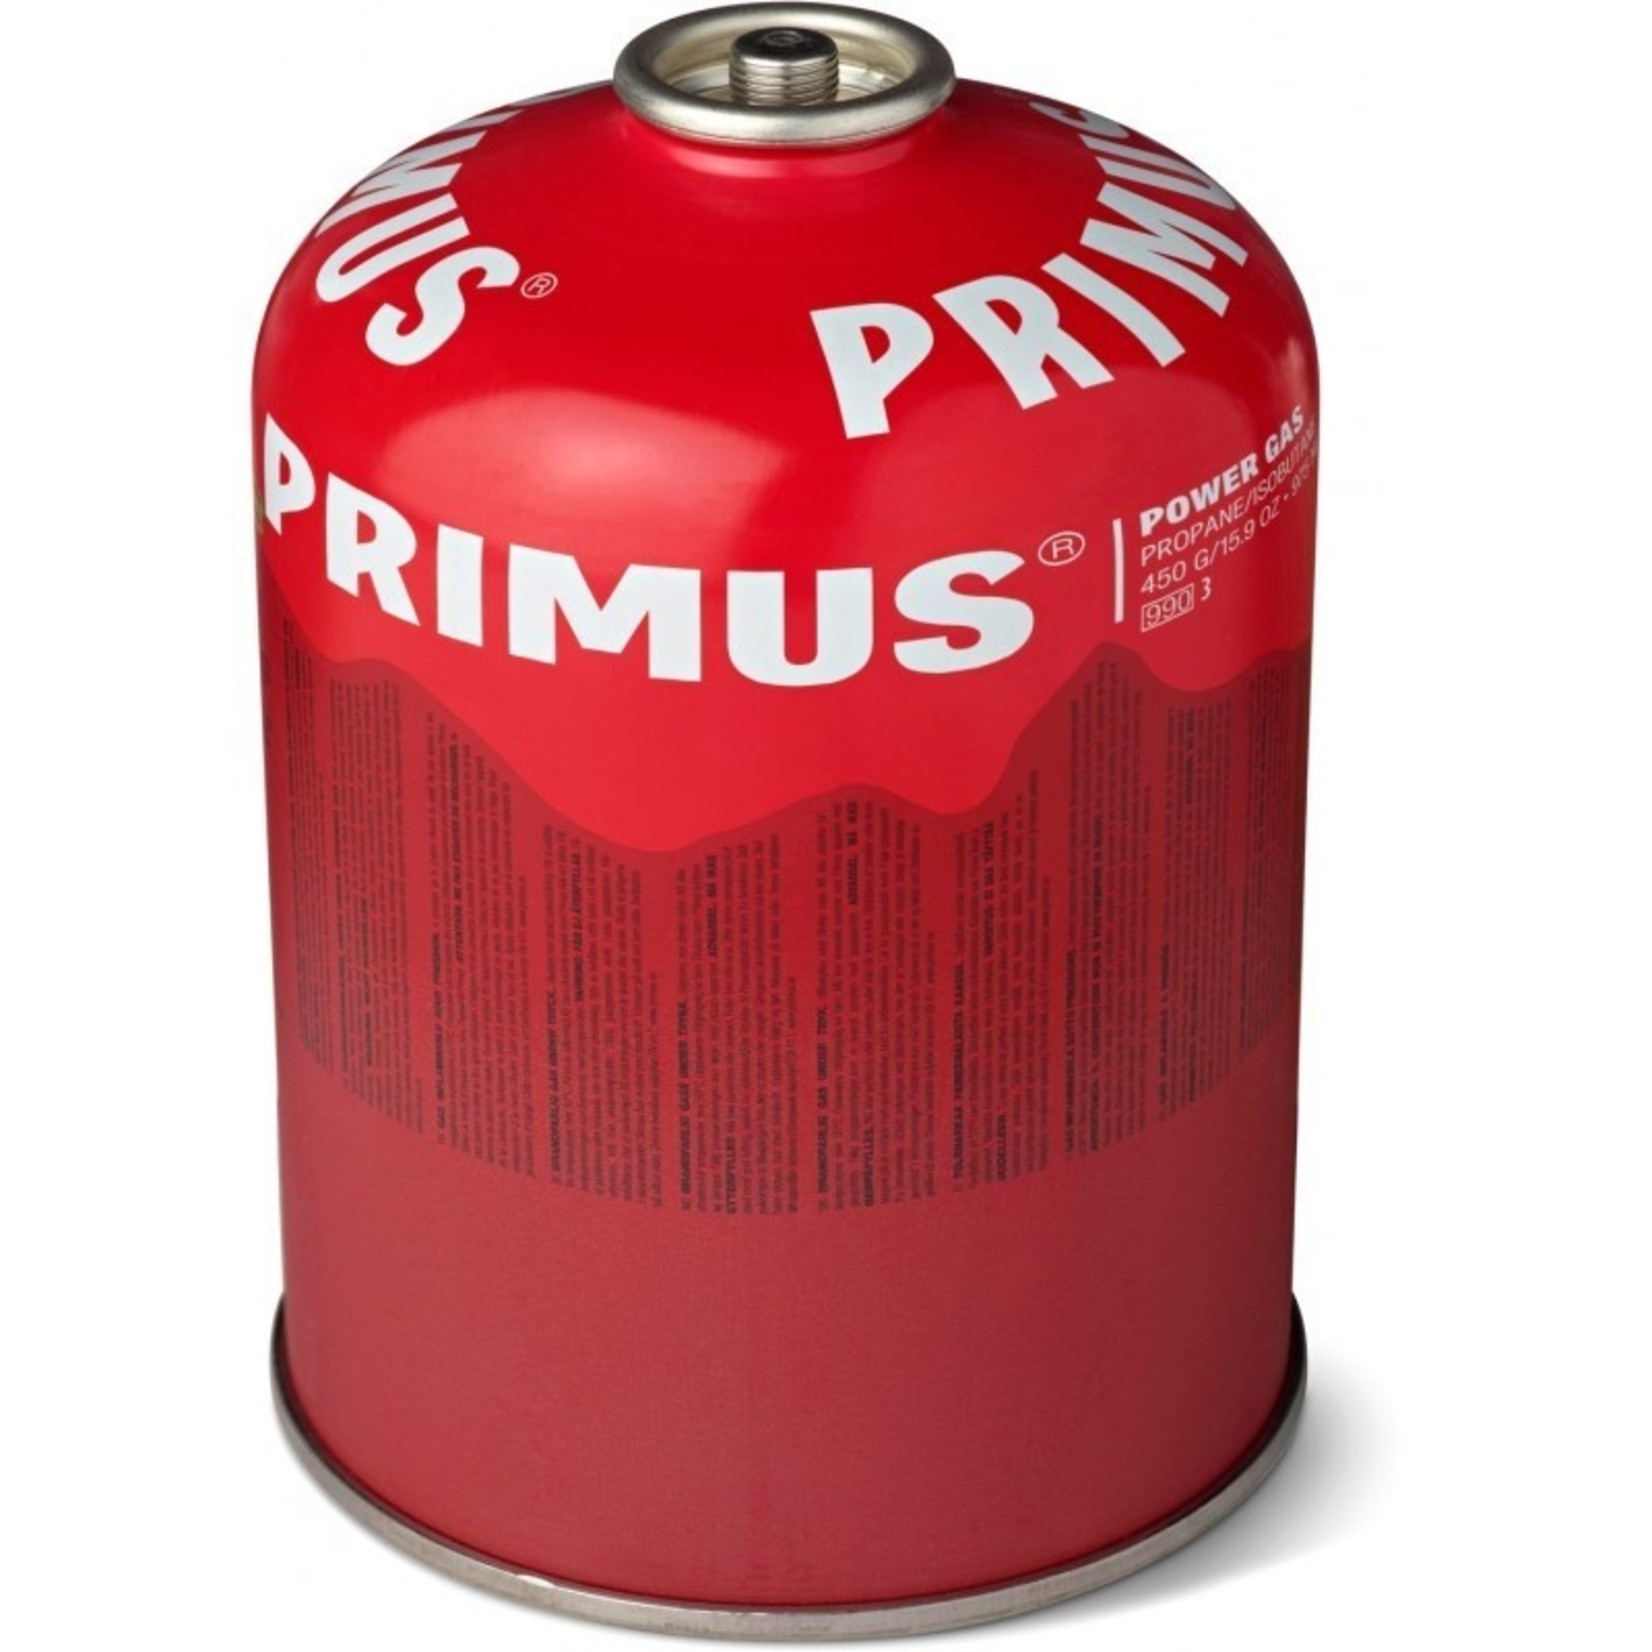 Primus Primus PowerGas cartridge 450 gram, Primus LP gasmengsel